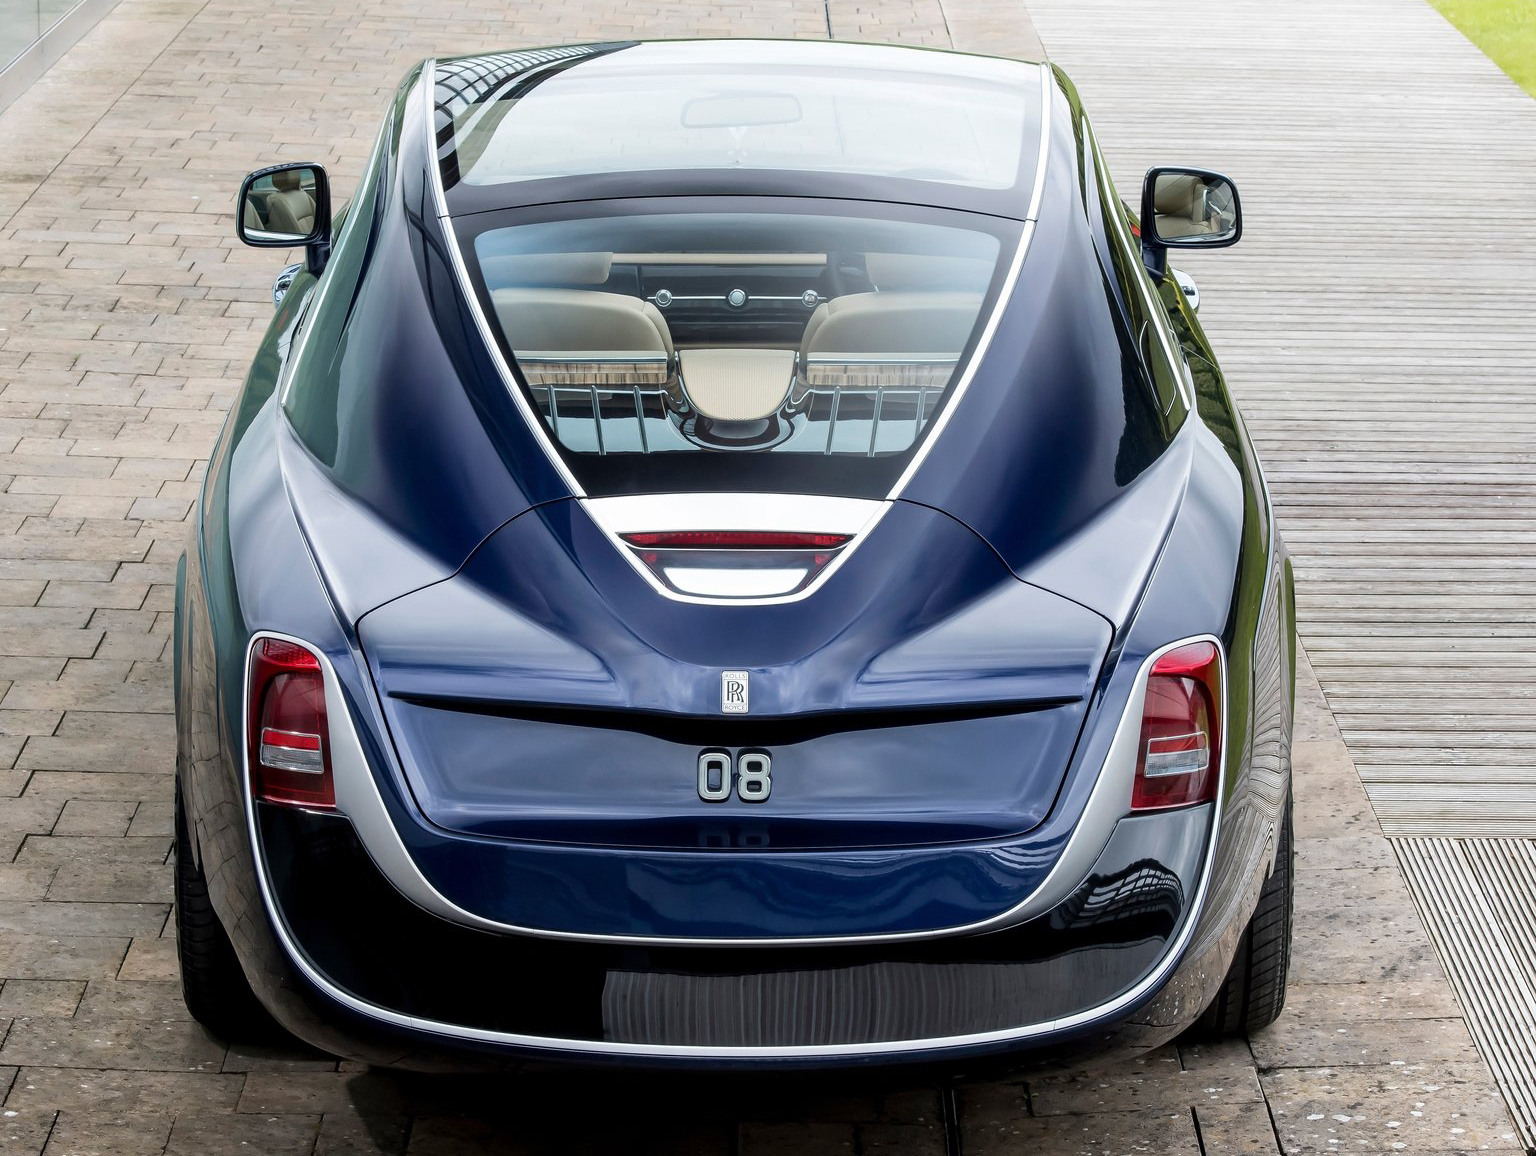 Rolls Royce Sweaptail rear view